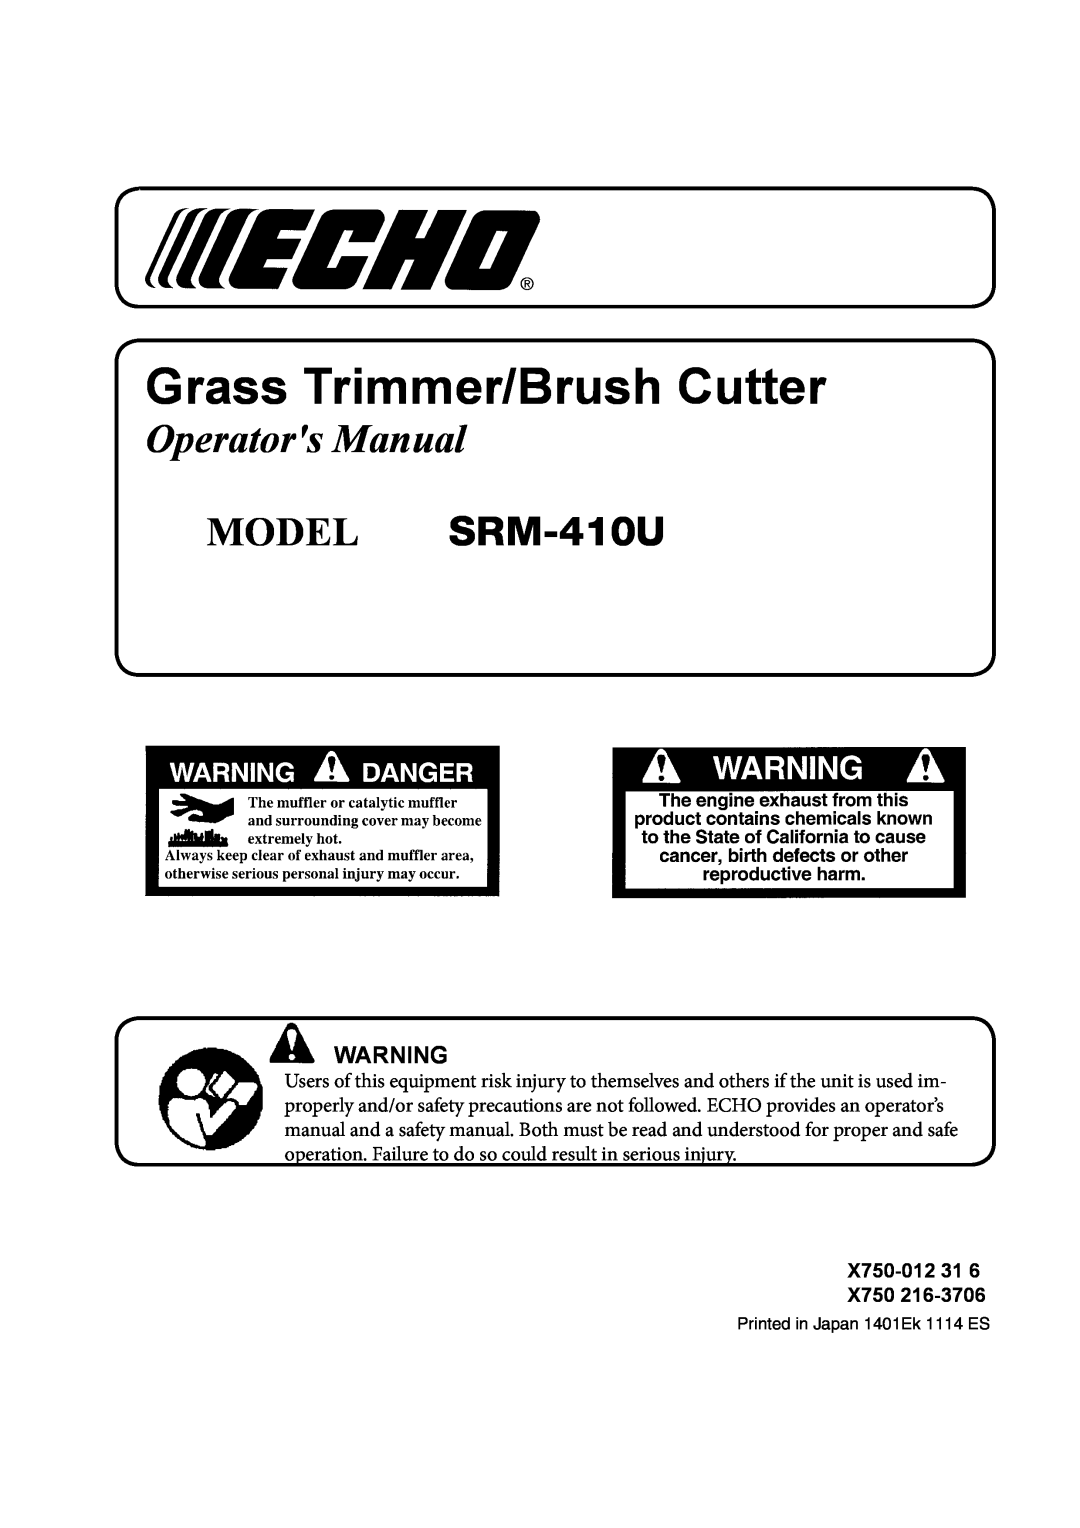 Echo manual X750-012, Grass Trimmer/Brush Cutter, Operators Manual, MODEL SRM-410U 